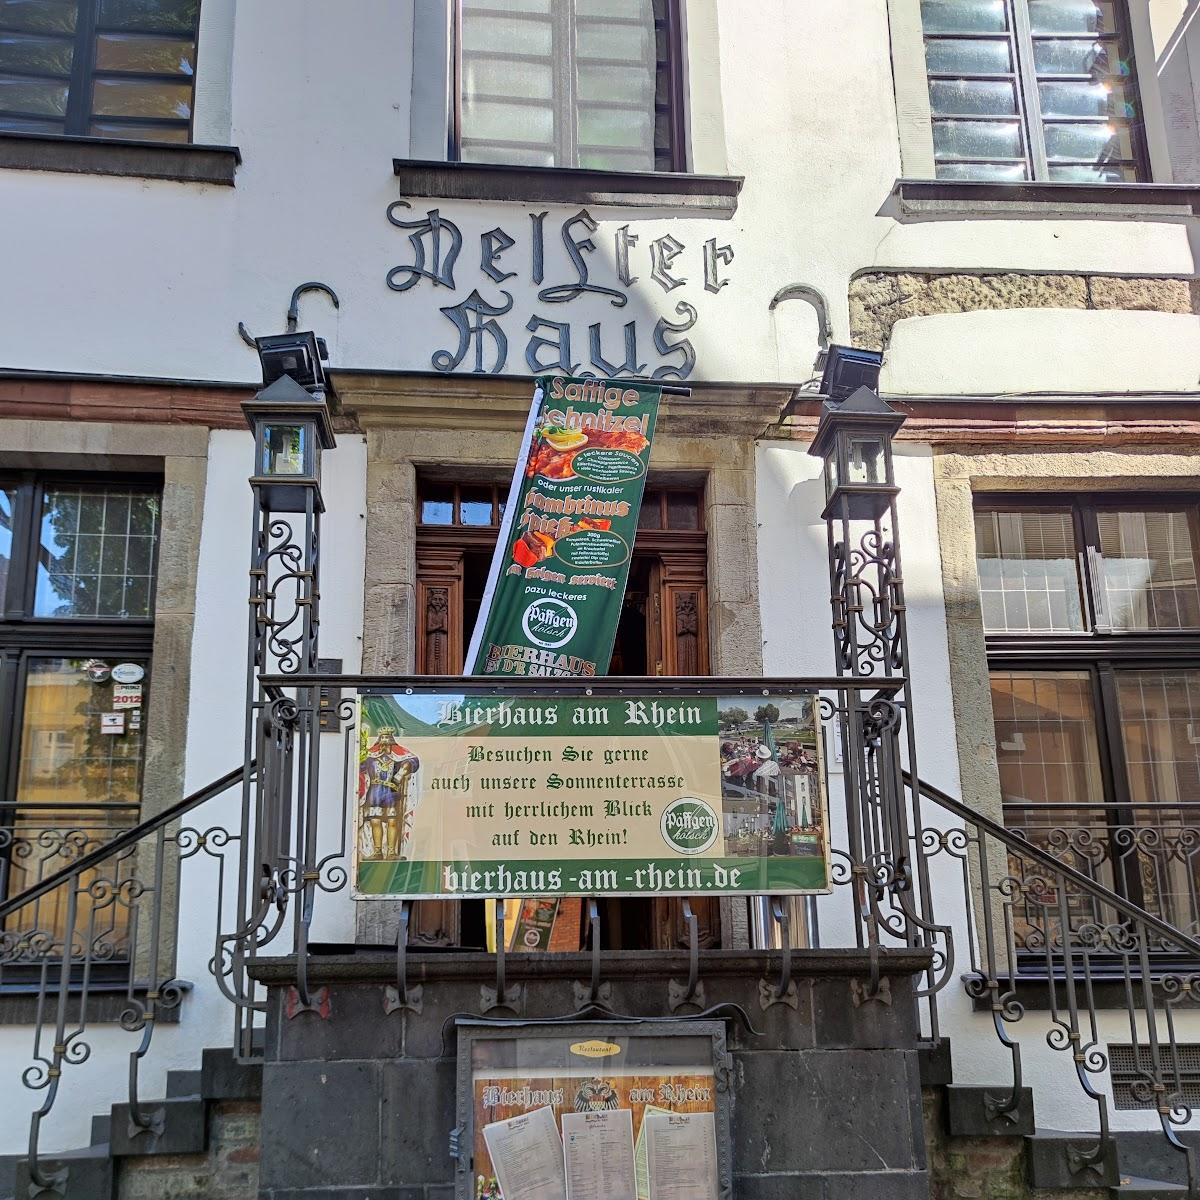 Restaurant "Delfter Haus" in Köln